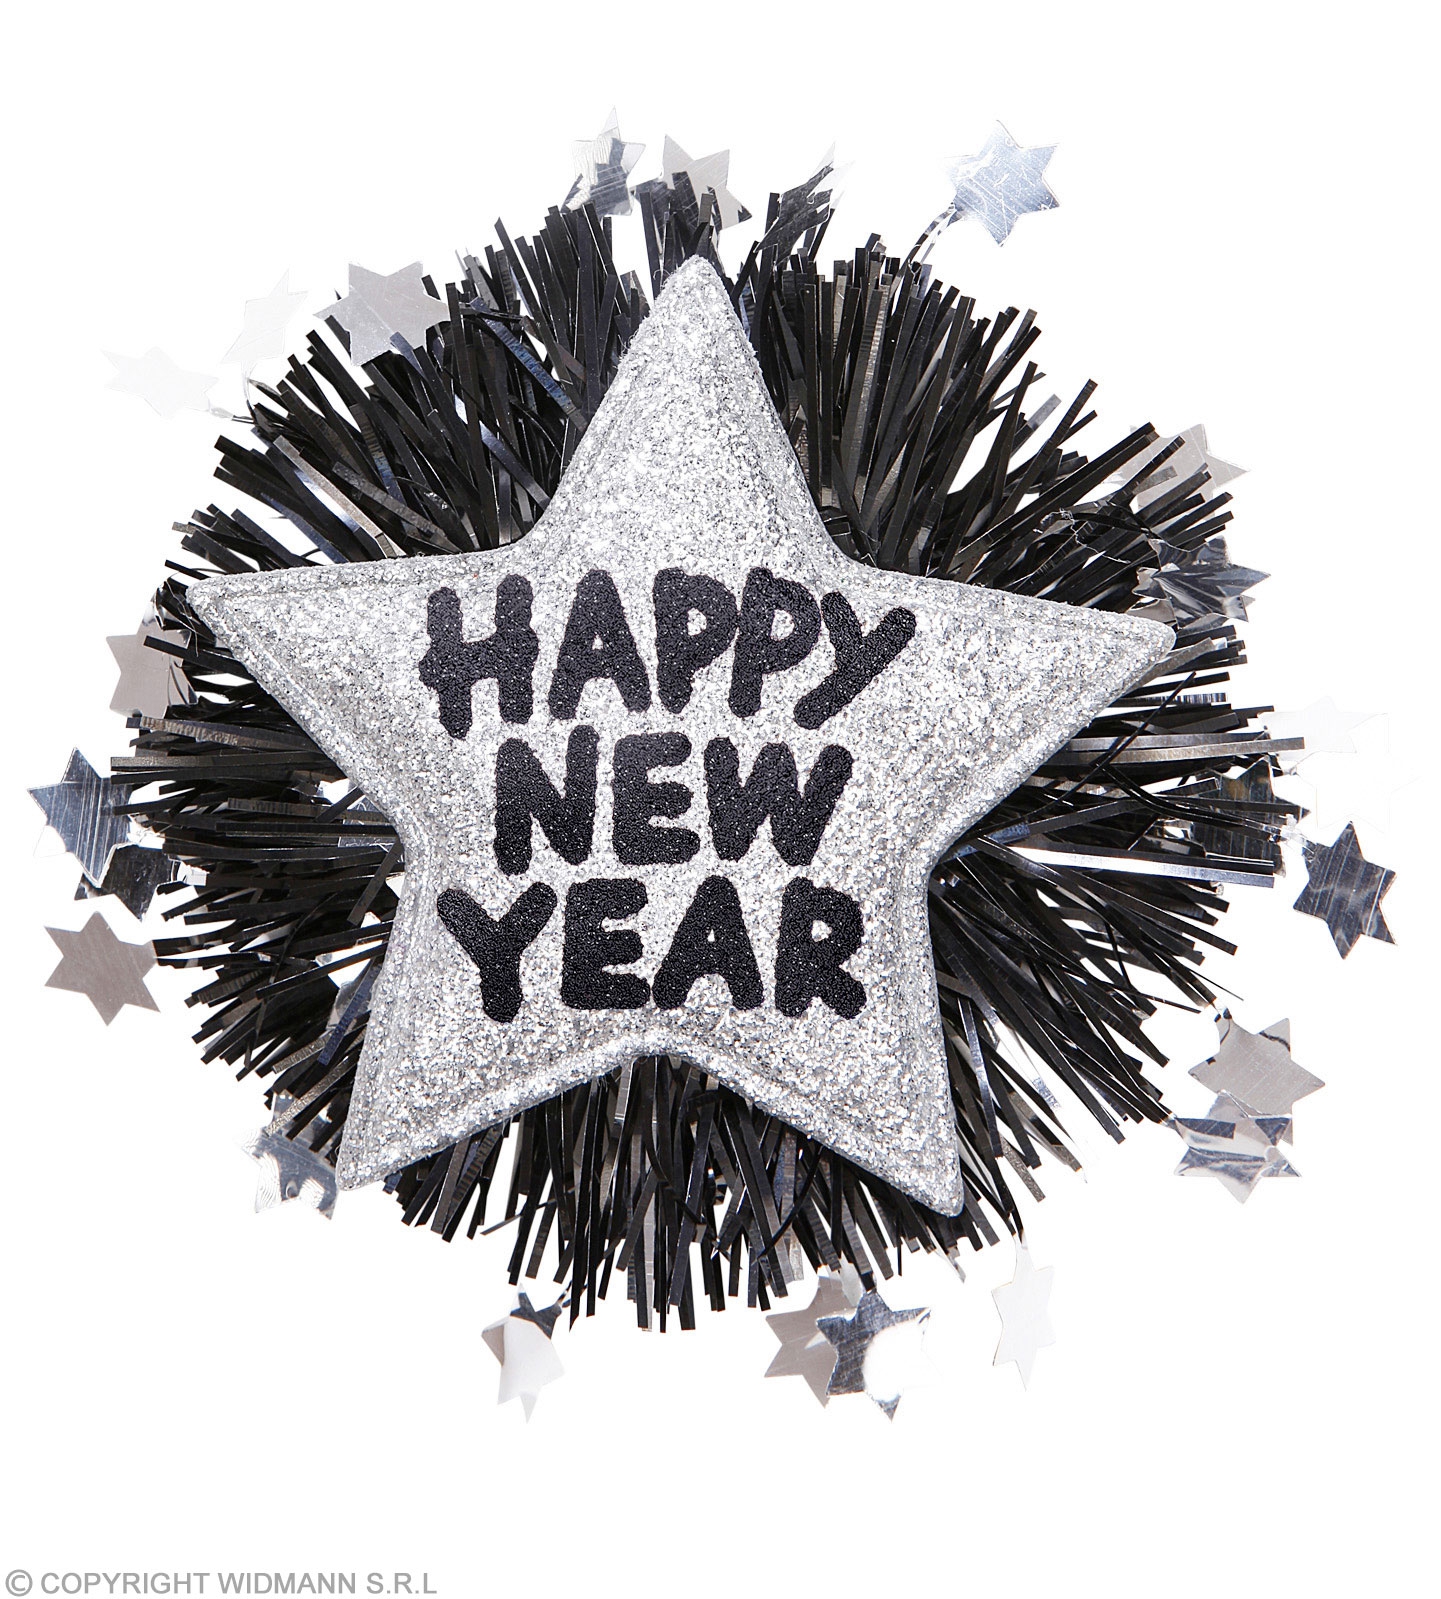 Brosche " Happy New Year", Silber/Schwarz